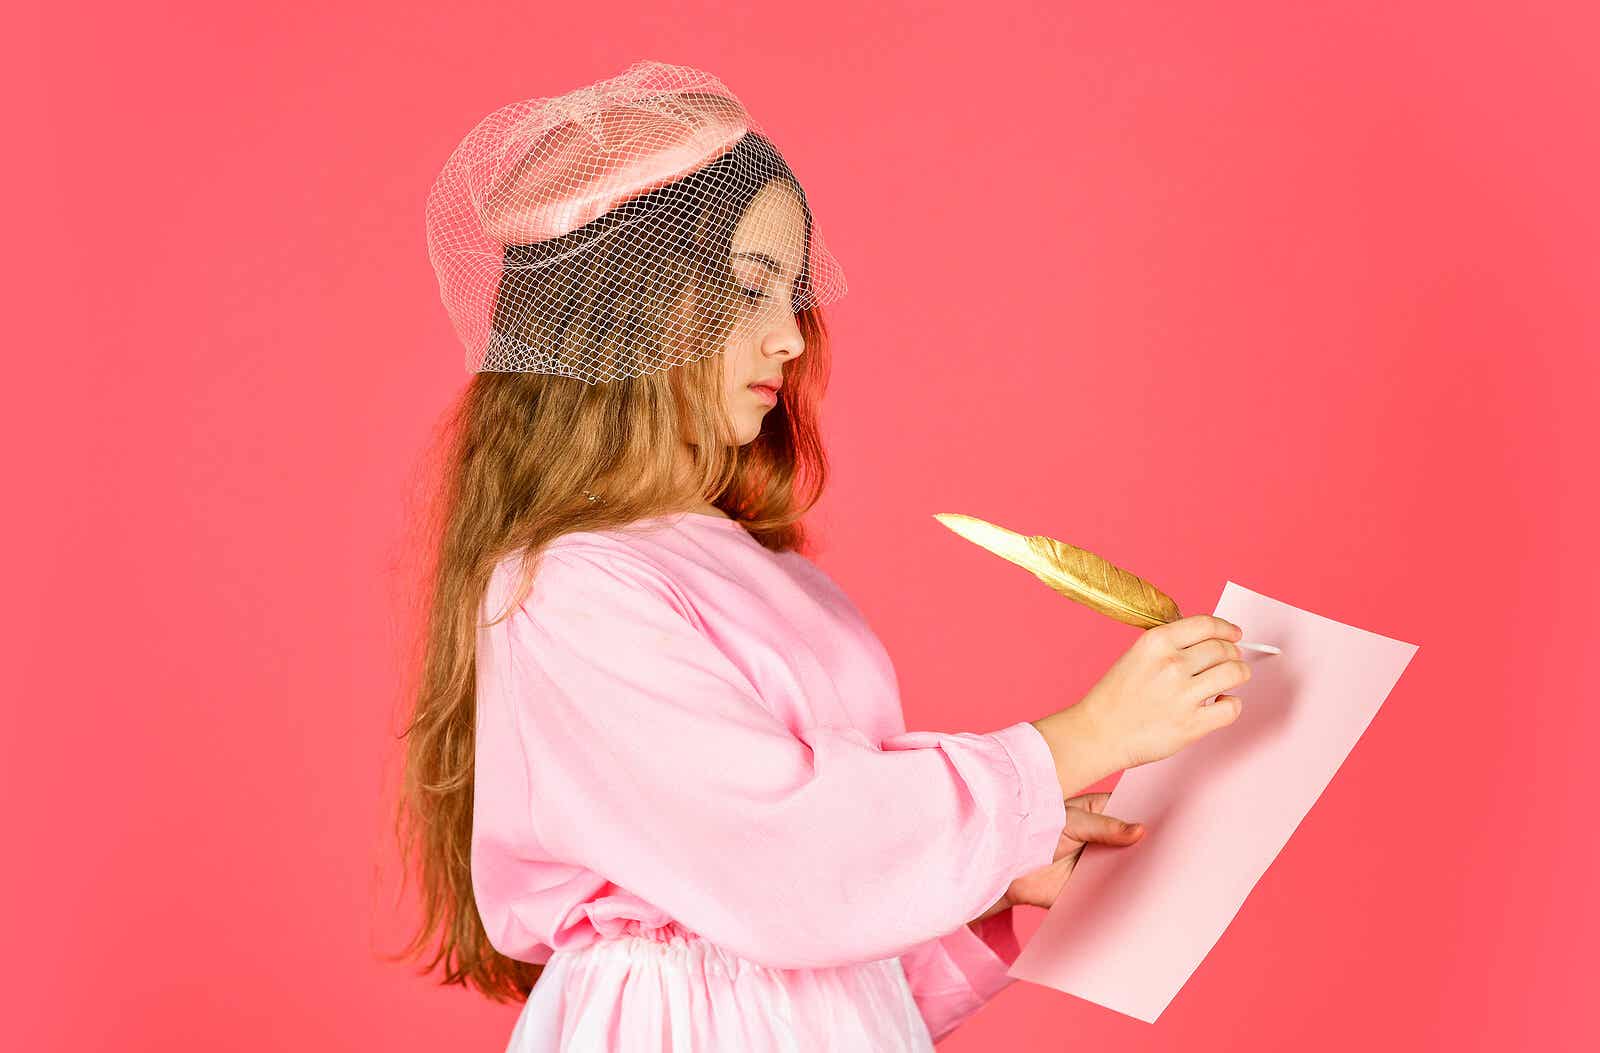 En pige klædt ud med en gammeldags hat og kjole, skriver på et papir med en fjer